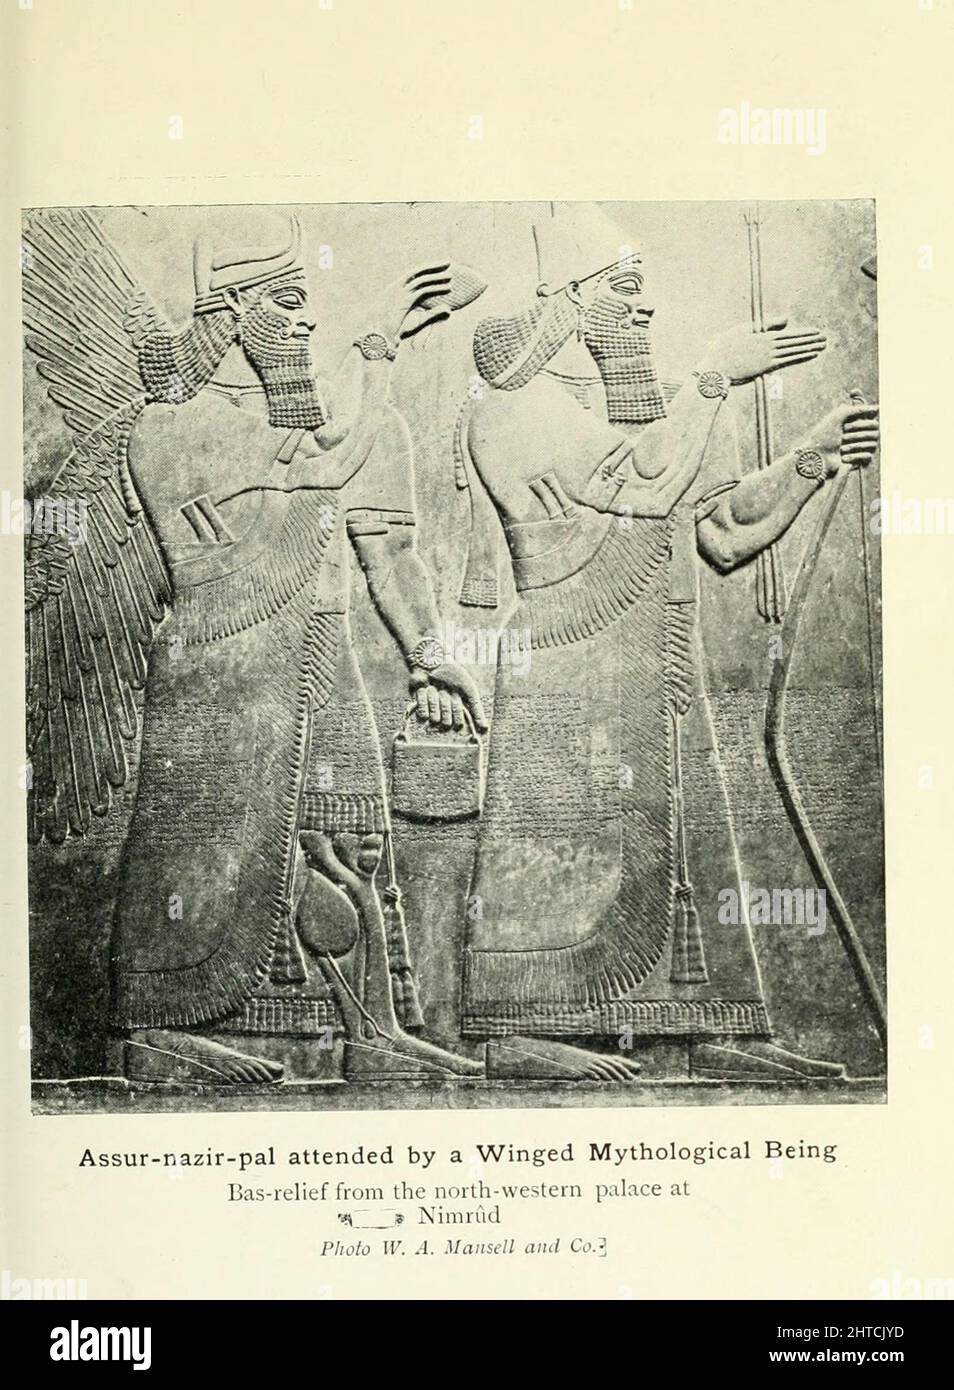 Assur-nazir-pal (Ashurnasirpal) besucht von einem geflügelten mythologischen Wesen Bas-Relief aus dem nordwestlichen Palast in Nimrud aus dem Buch "Mythen und Legenden von Babylonia und Assyrien" von Lewis Spence, Veröffentlicht London : Harrap 1916 Stockfoto